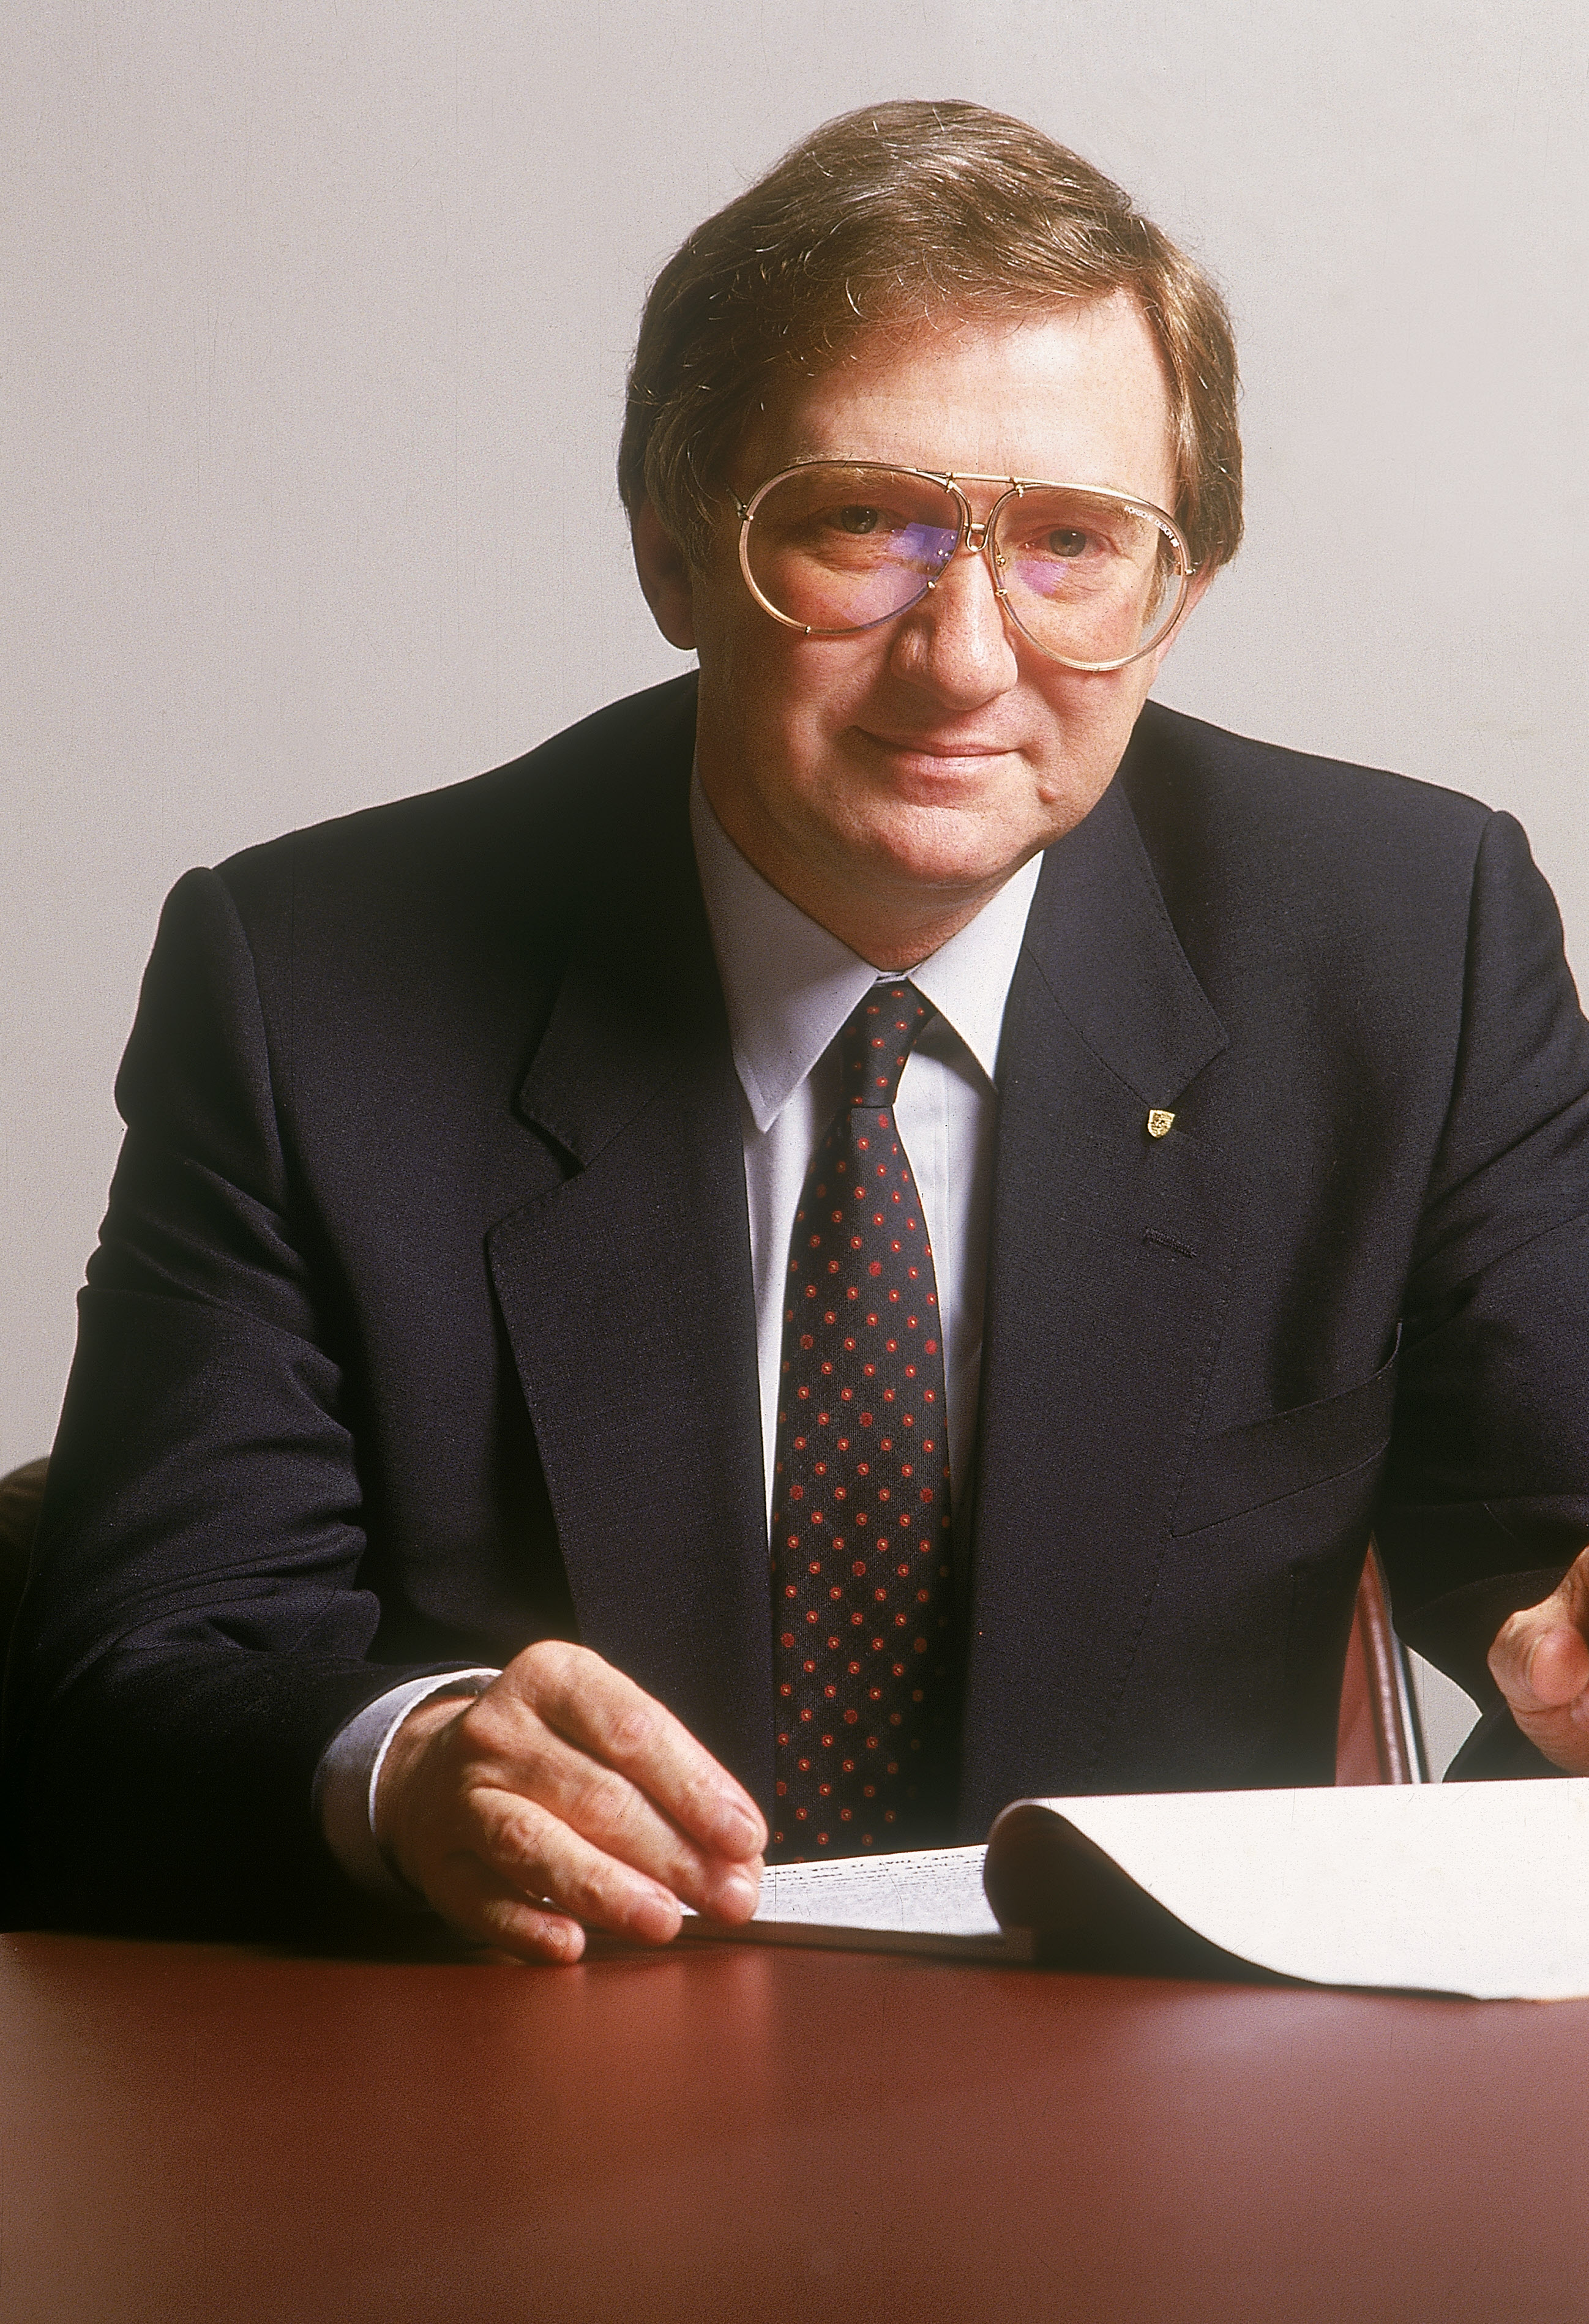 Peter Schutz, Presidente del Consejo de Dirección de Porsche AG entre 1981 y 1987, 40º aniversario de Porsche Ibérica (1984-2024)